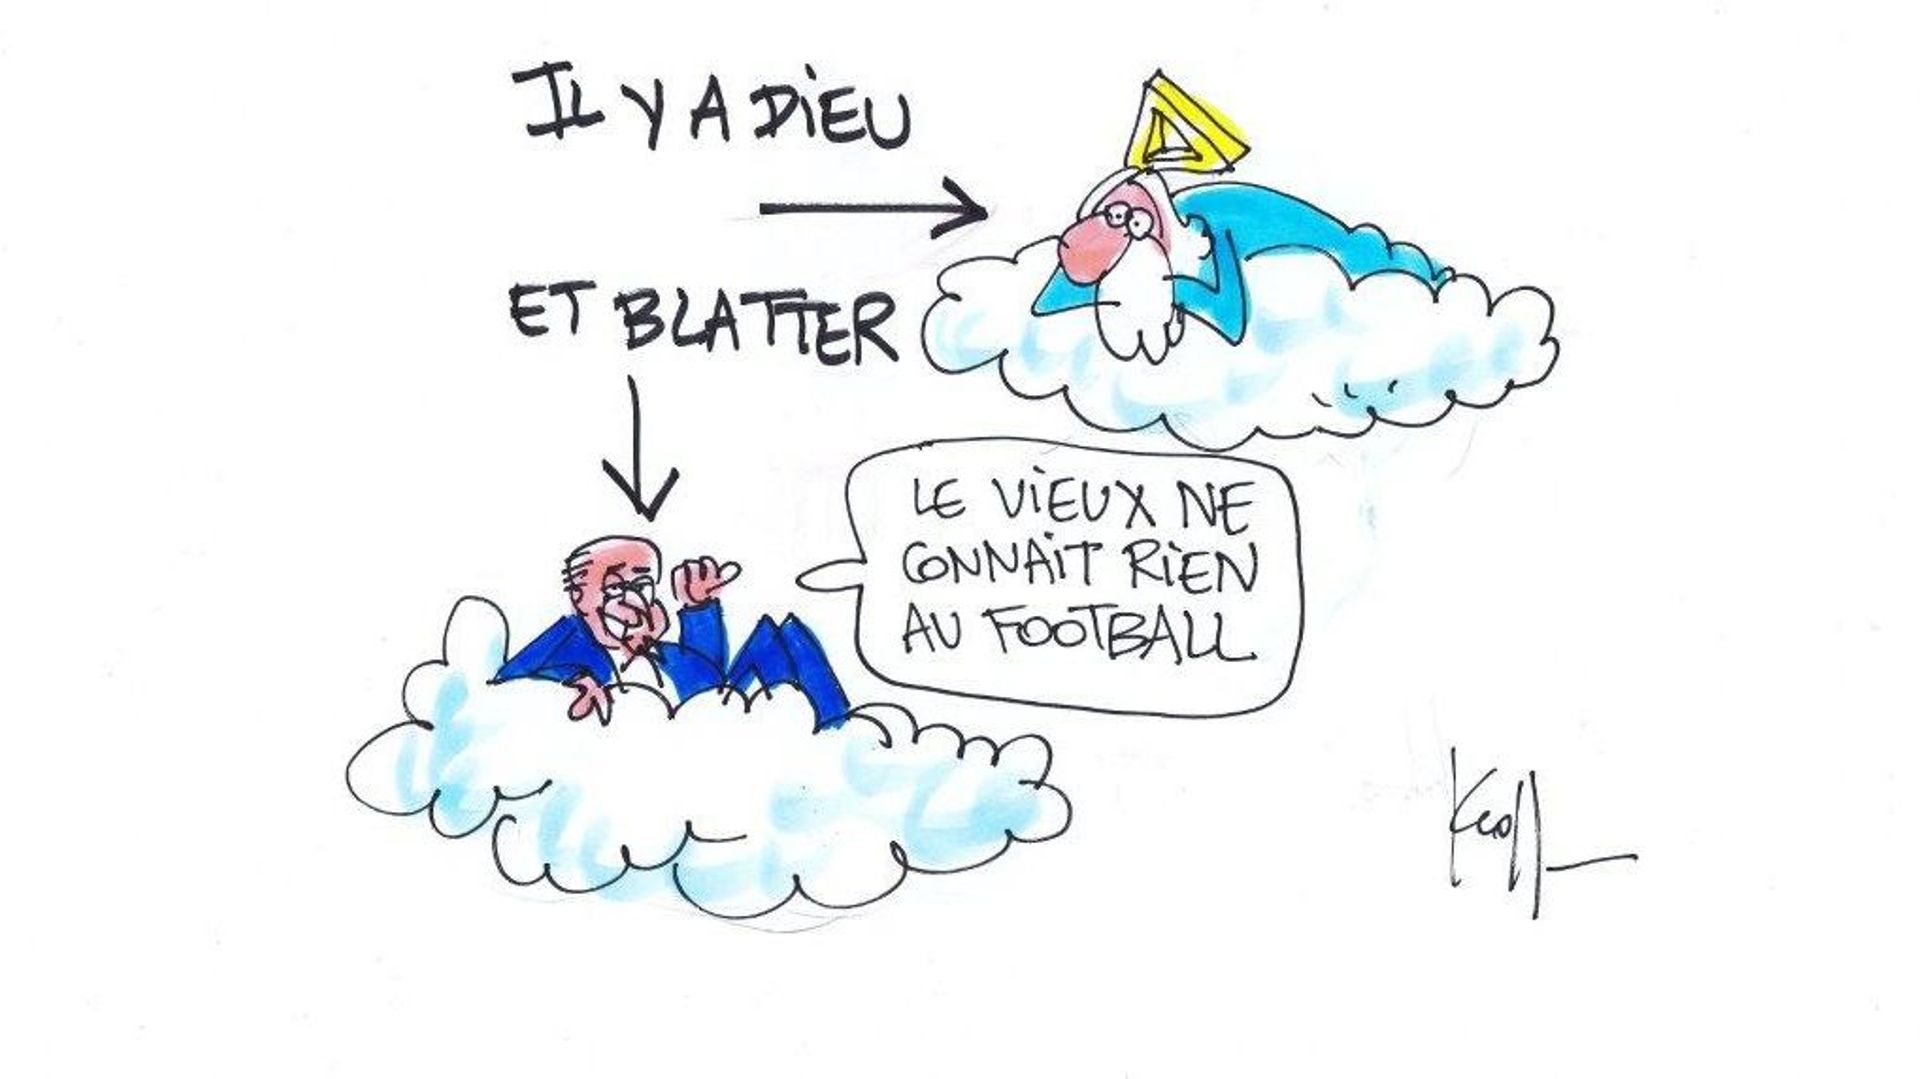 "Il y a Dieu, et Blatter"